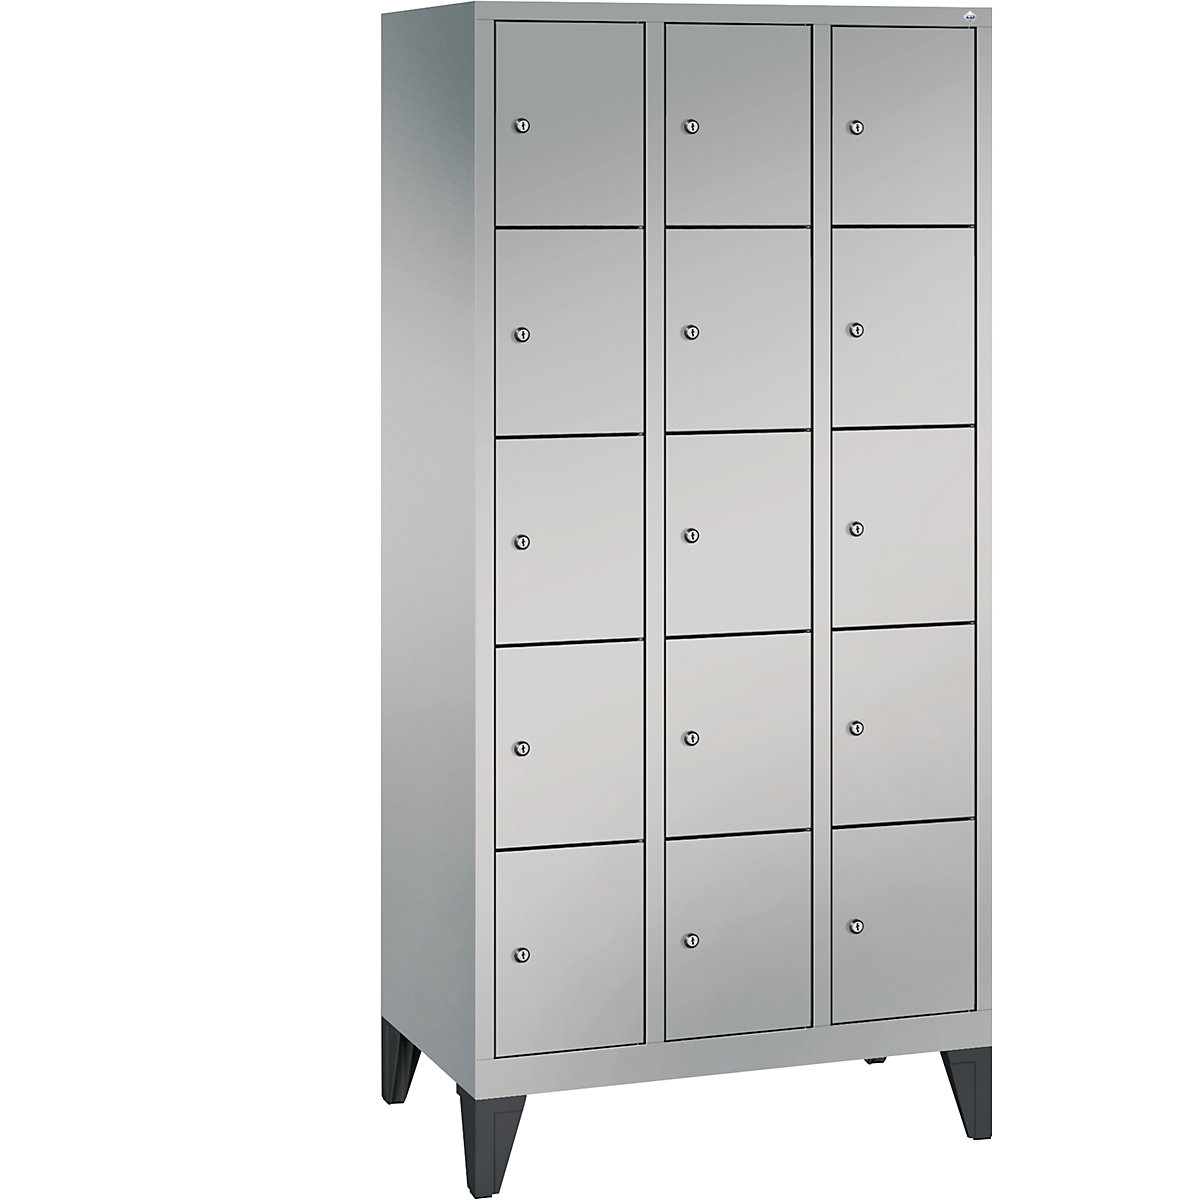 CLASSIC locker unit with feet – C+P, 3 compartments, 5 shelf compartments each, compartment width 300 mm, white aluminium-6